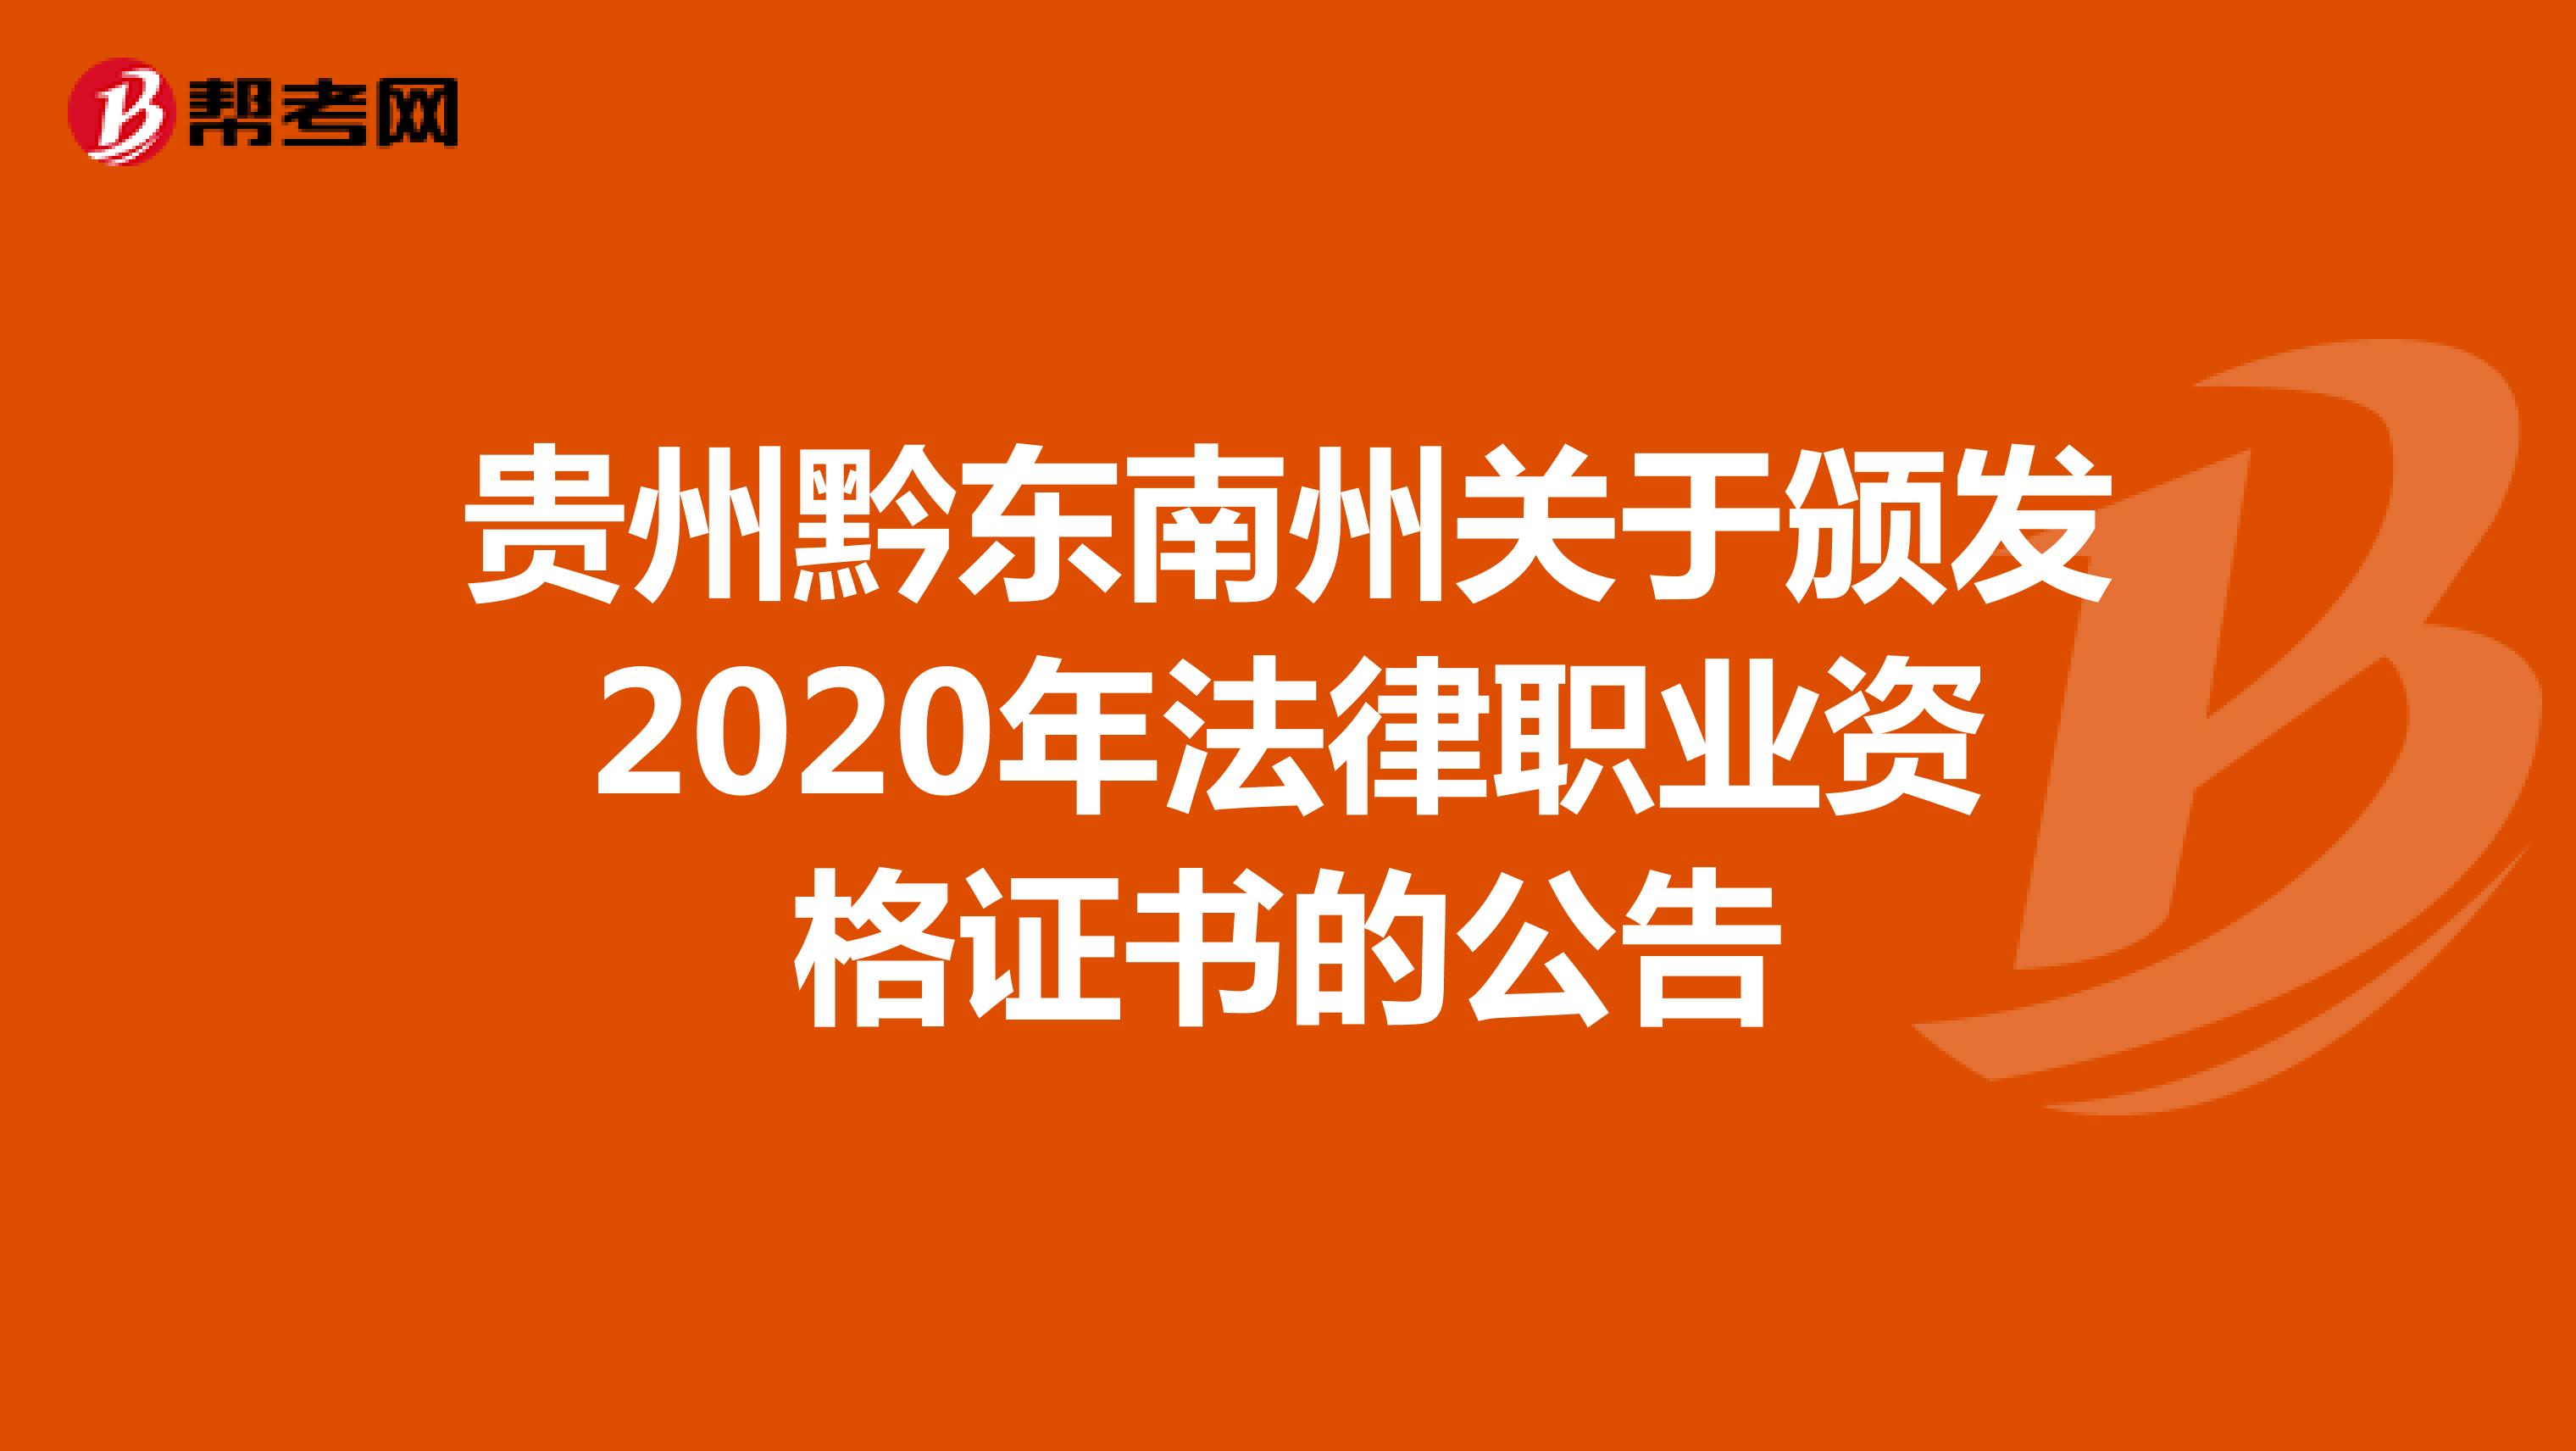 贵州黔东南州关于颁发2020年法律职业资格证书的公告